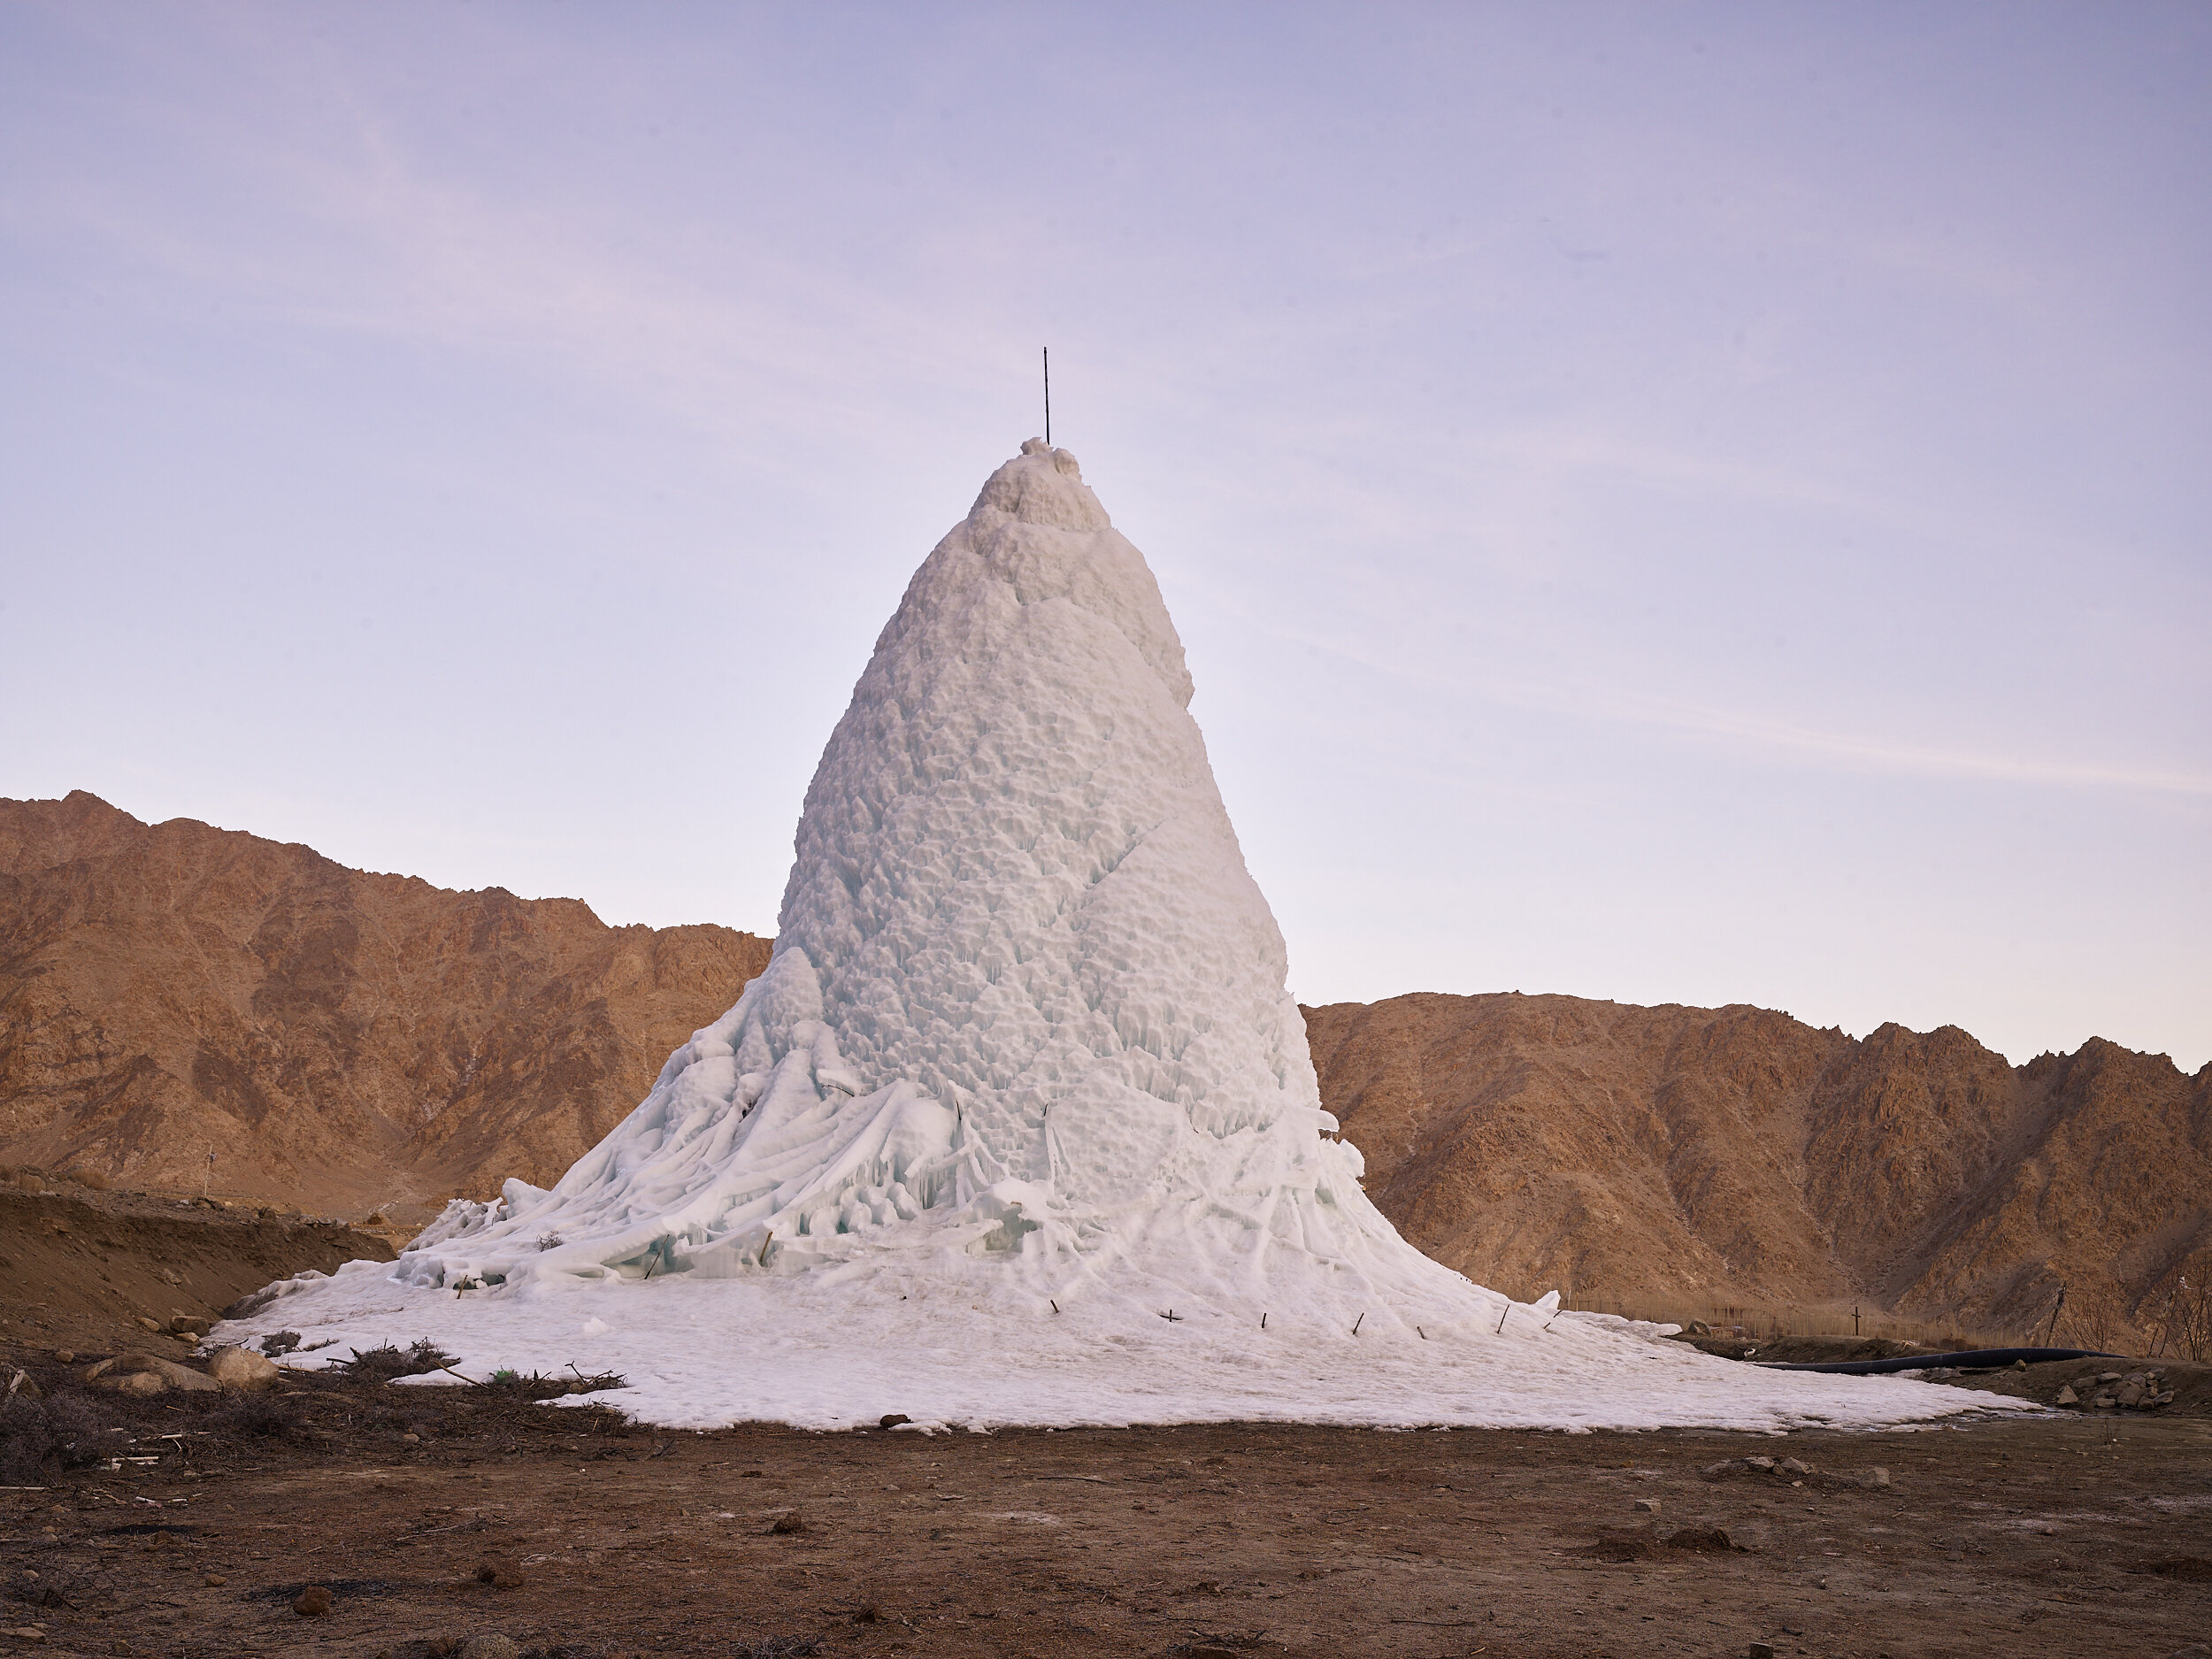  ice stupa 03, Ladakh, India, 2018 